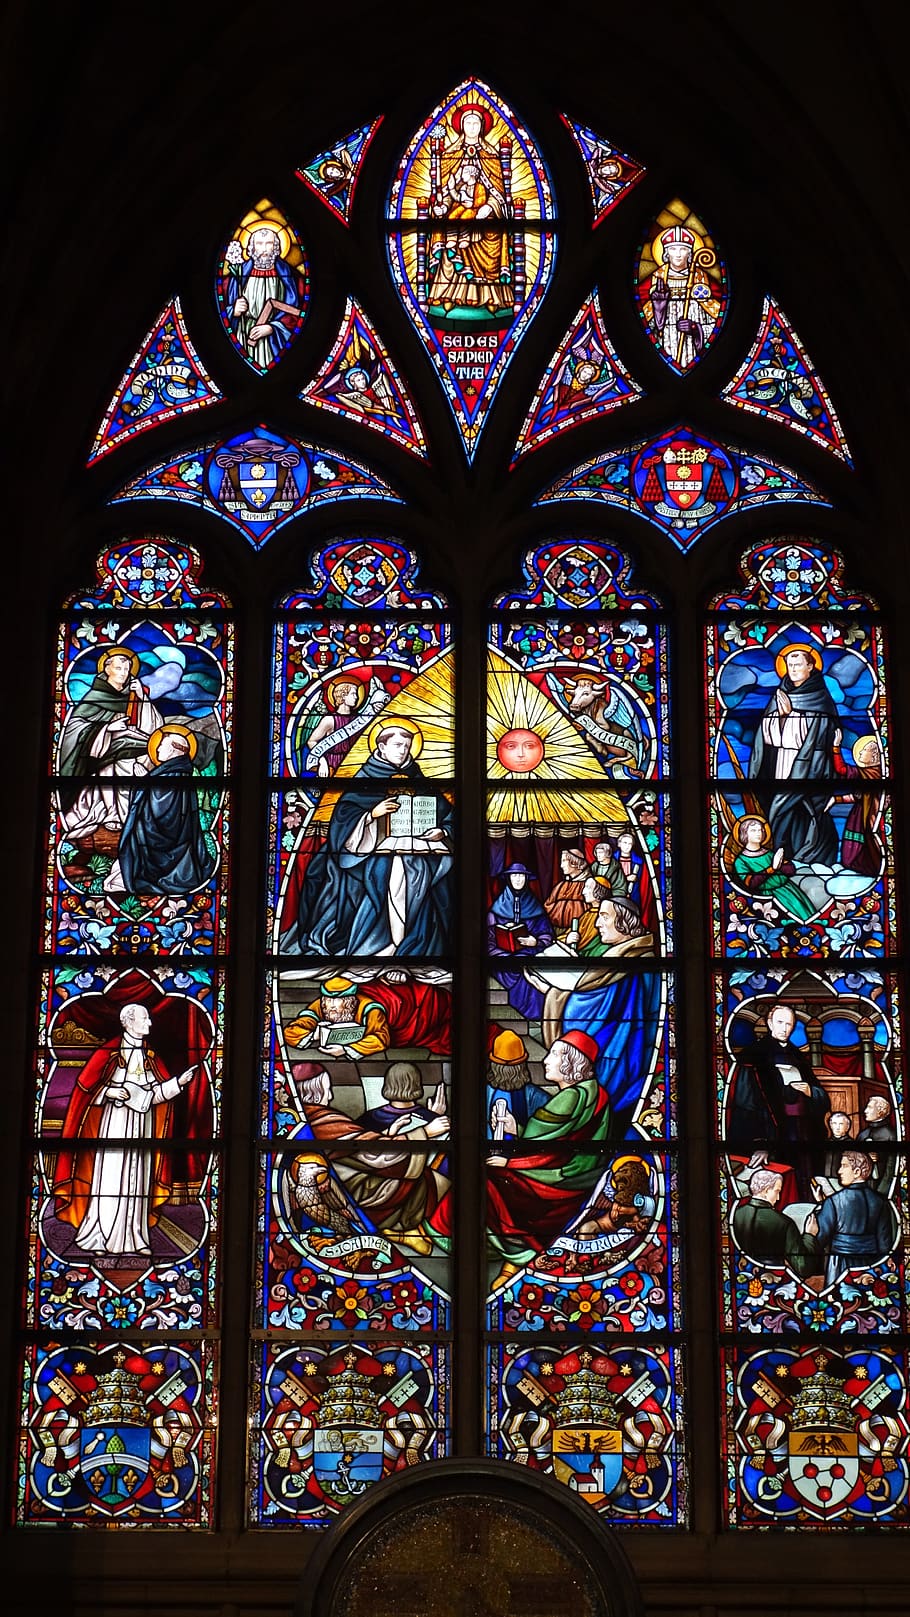 janela da igreja, vitral janela, vitral, igreja, arquitetura, religião, fé, cristianismo, catolicismo, mechelen